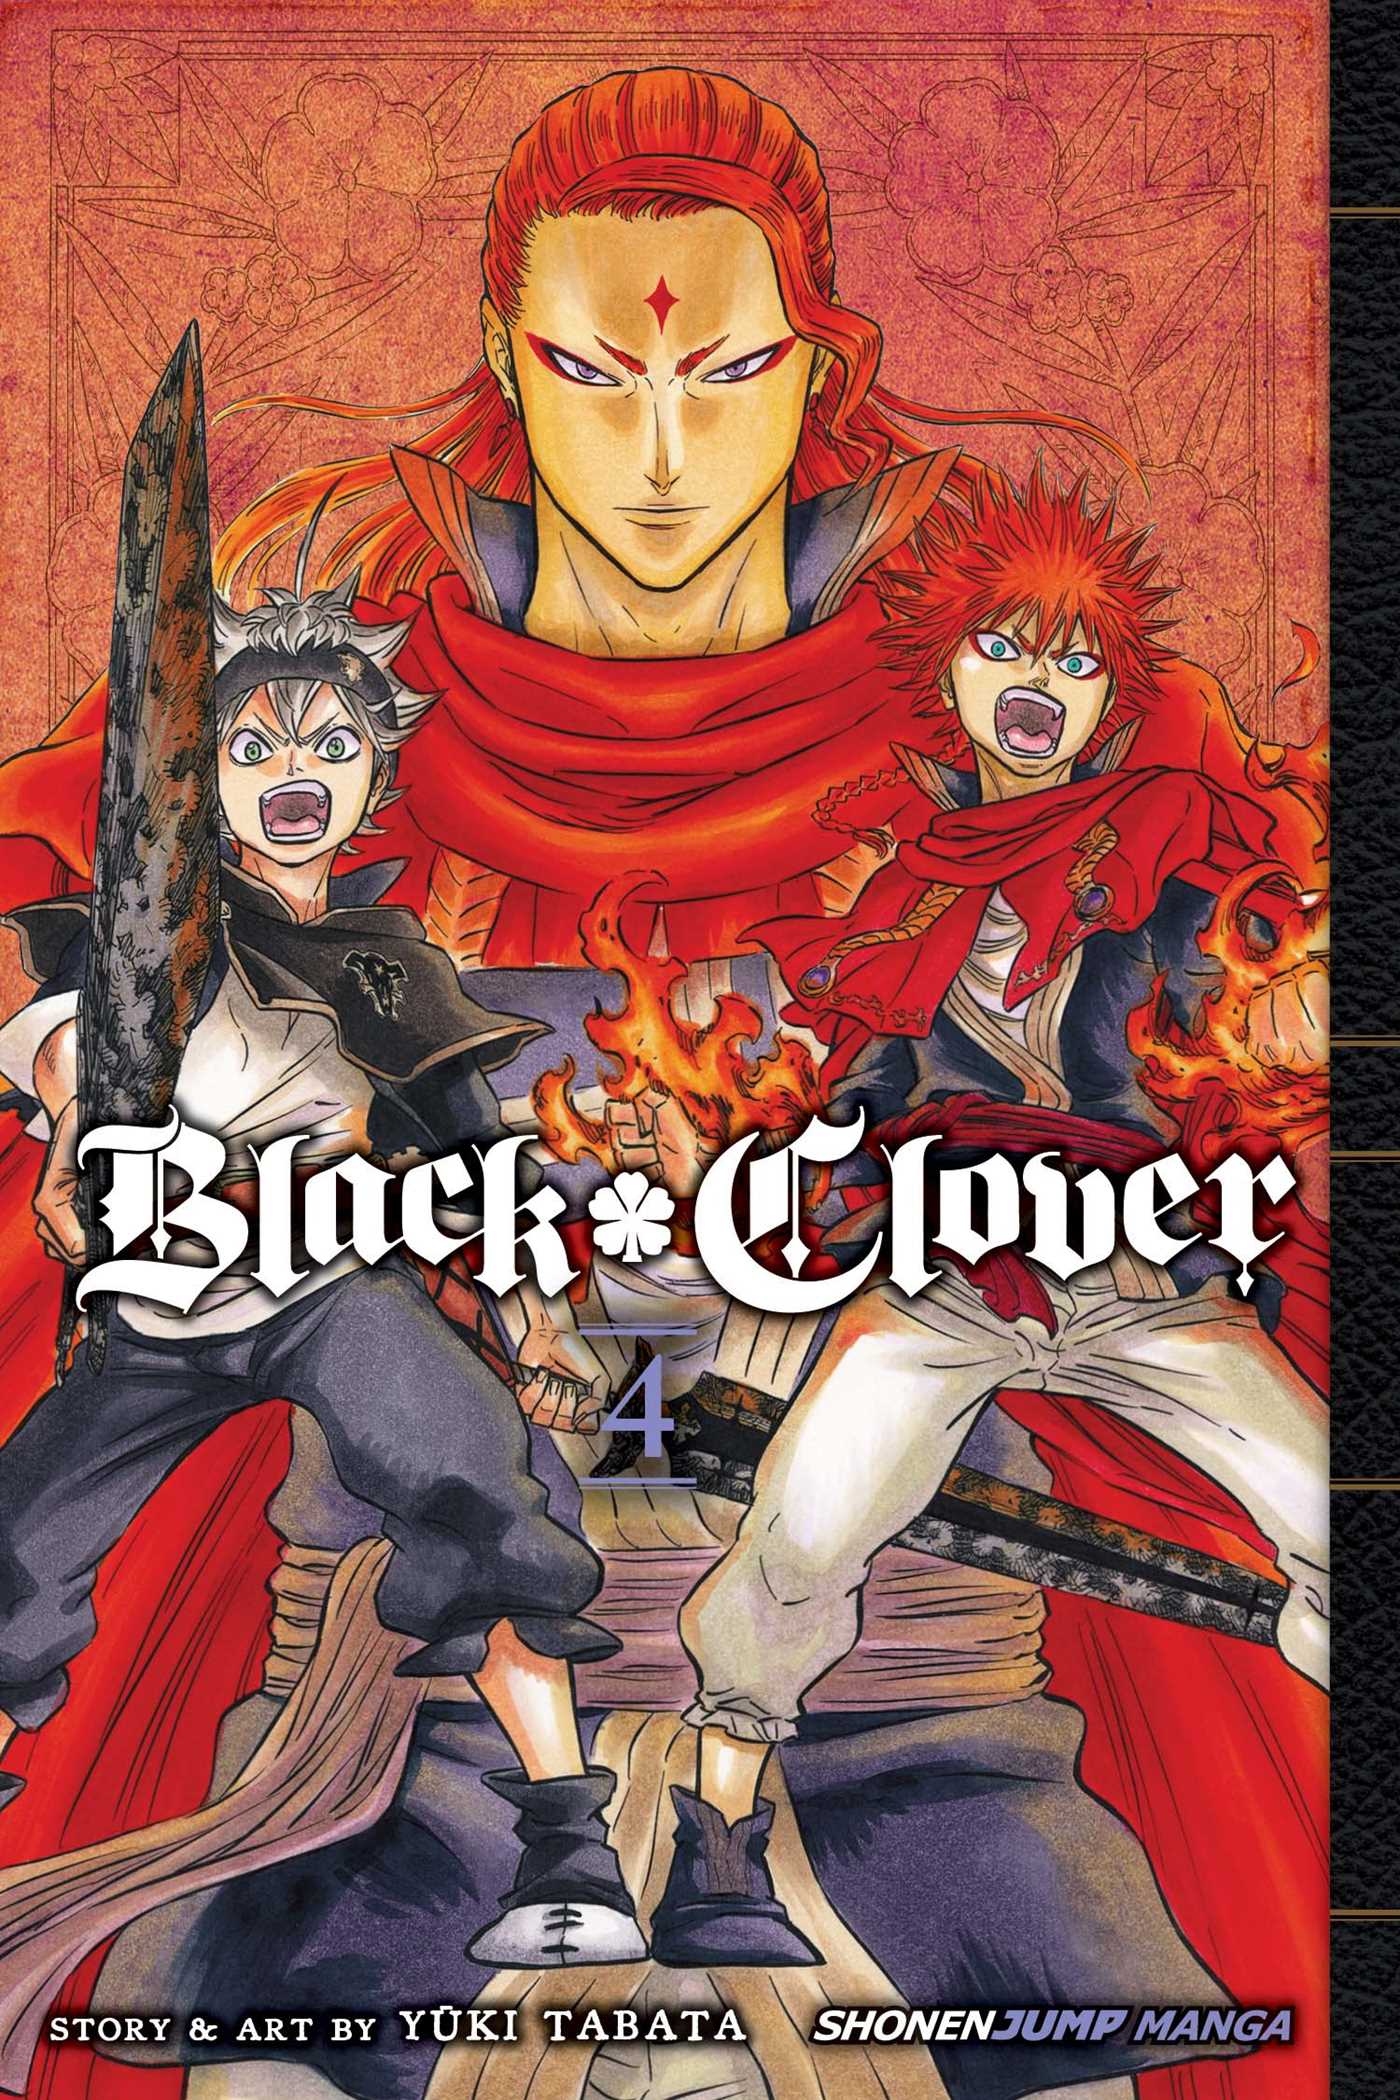 Black Clover - MangaMavericks.com